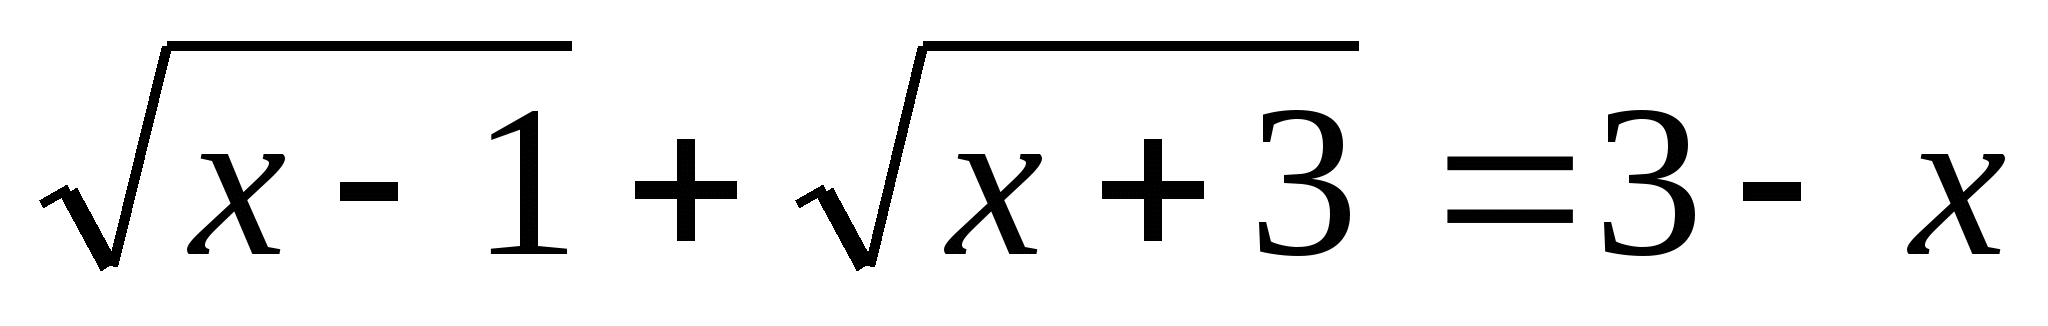 Методы решения иррациональных уравнений.